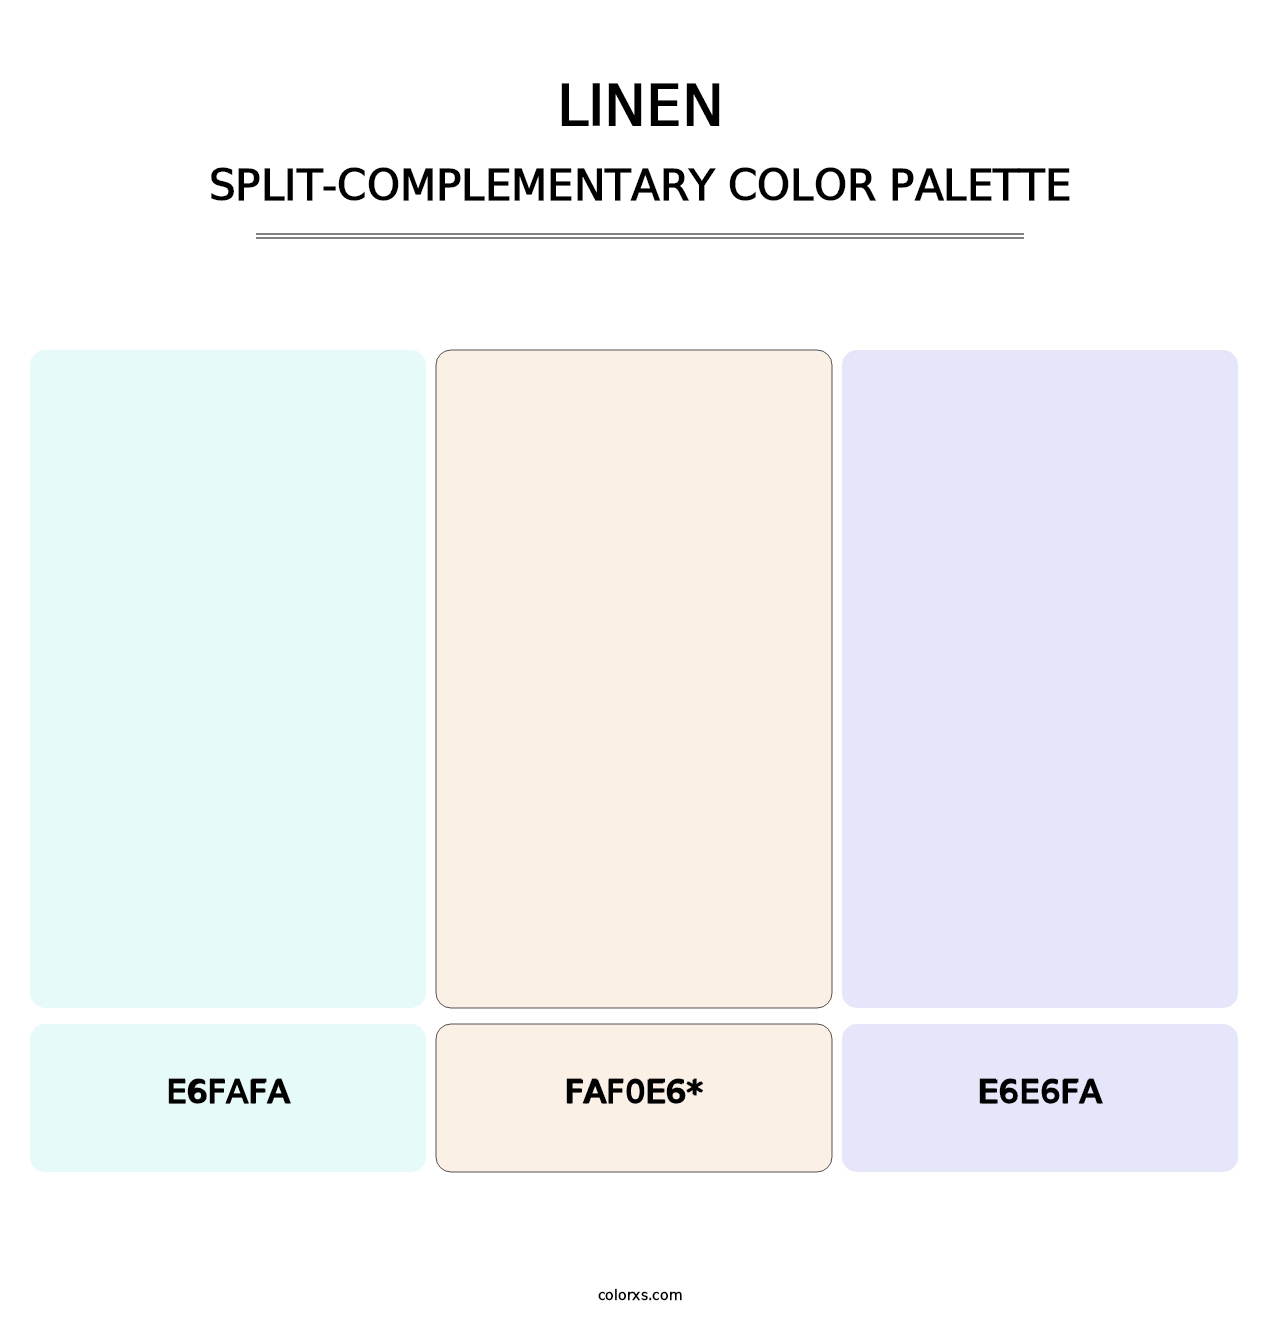 Linen - Split-Complementary Color Palette